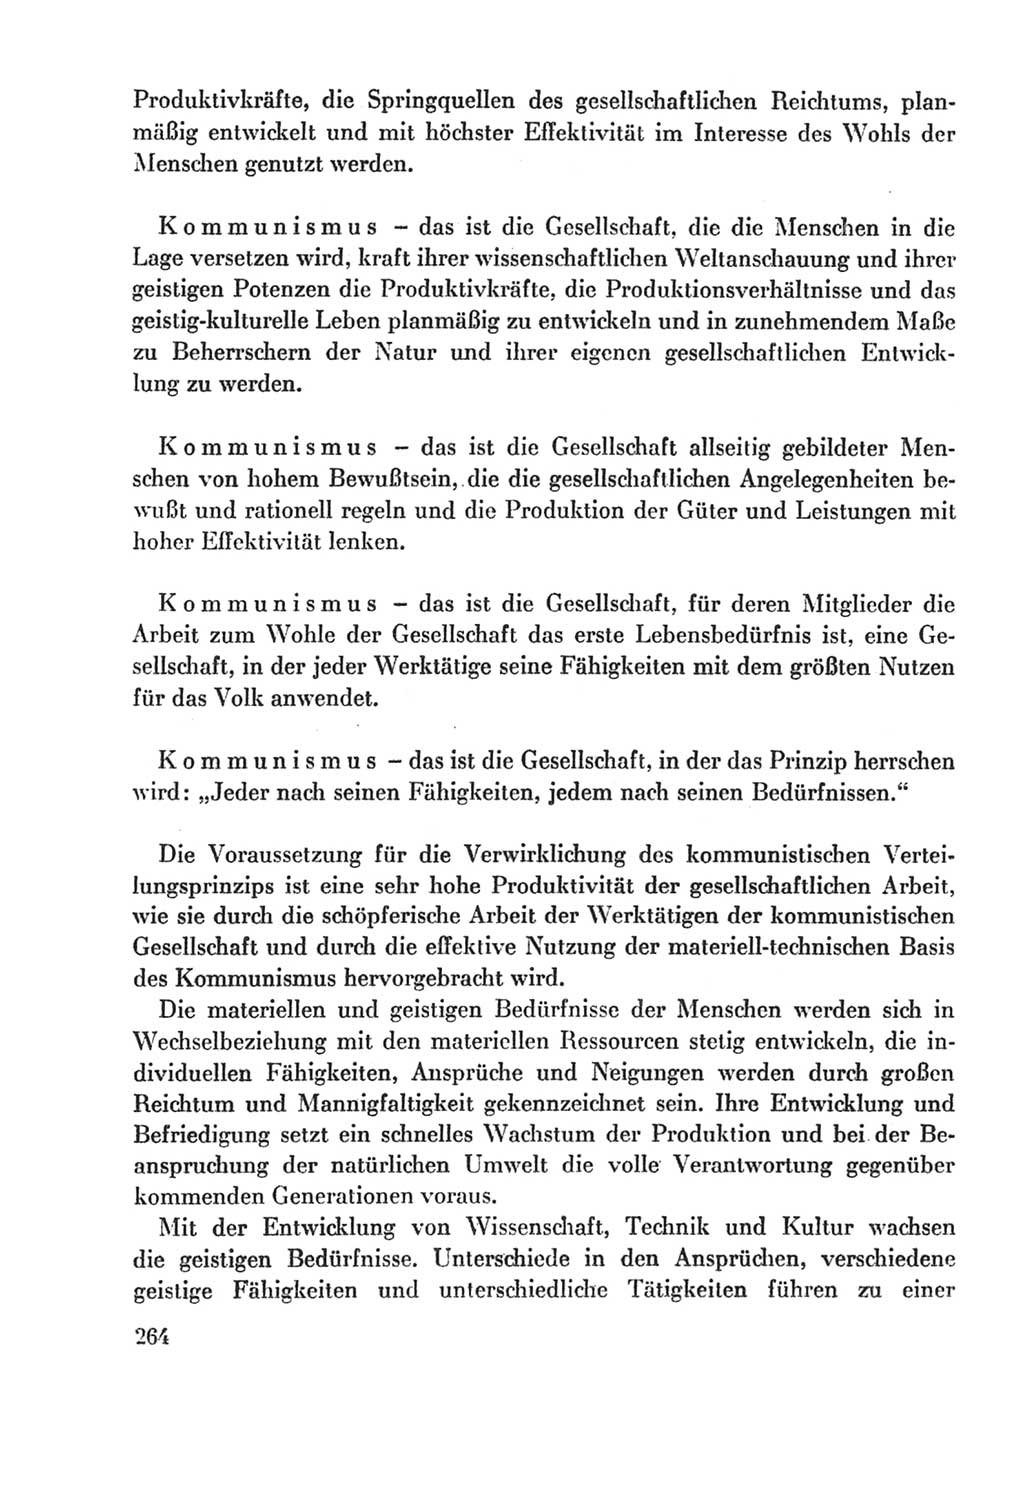 Protokoll der Verhandlungen des Ⅸ. Parteitages der Sozialistischen Einheitspartei Deutschlands (SED) [Deutsche Demokratische Republik (DDR)] 1976, Band 2, Seite 264 (Prot. Verh. Ⅸ. PT SED DDR 1976, Bd. 2, S. 264)